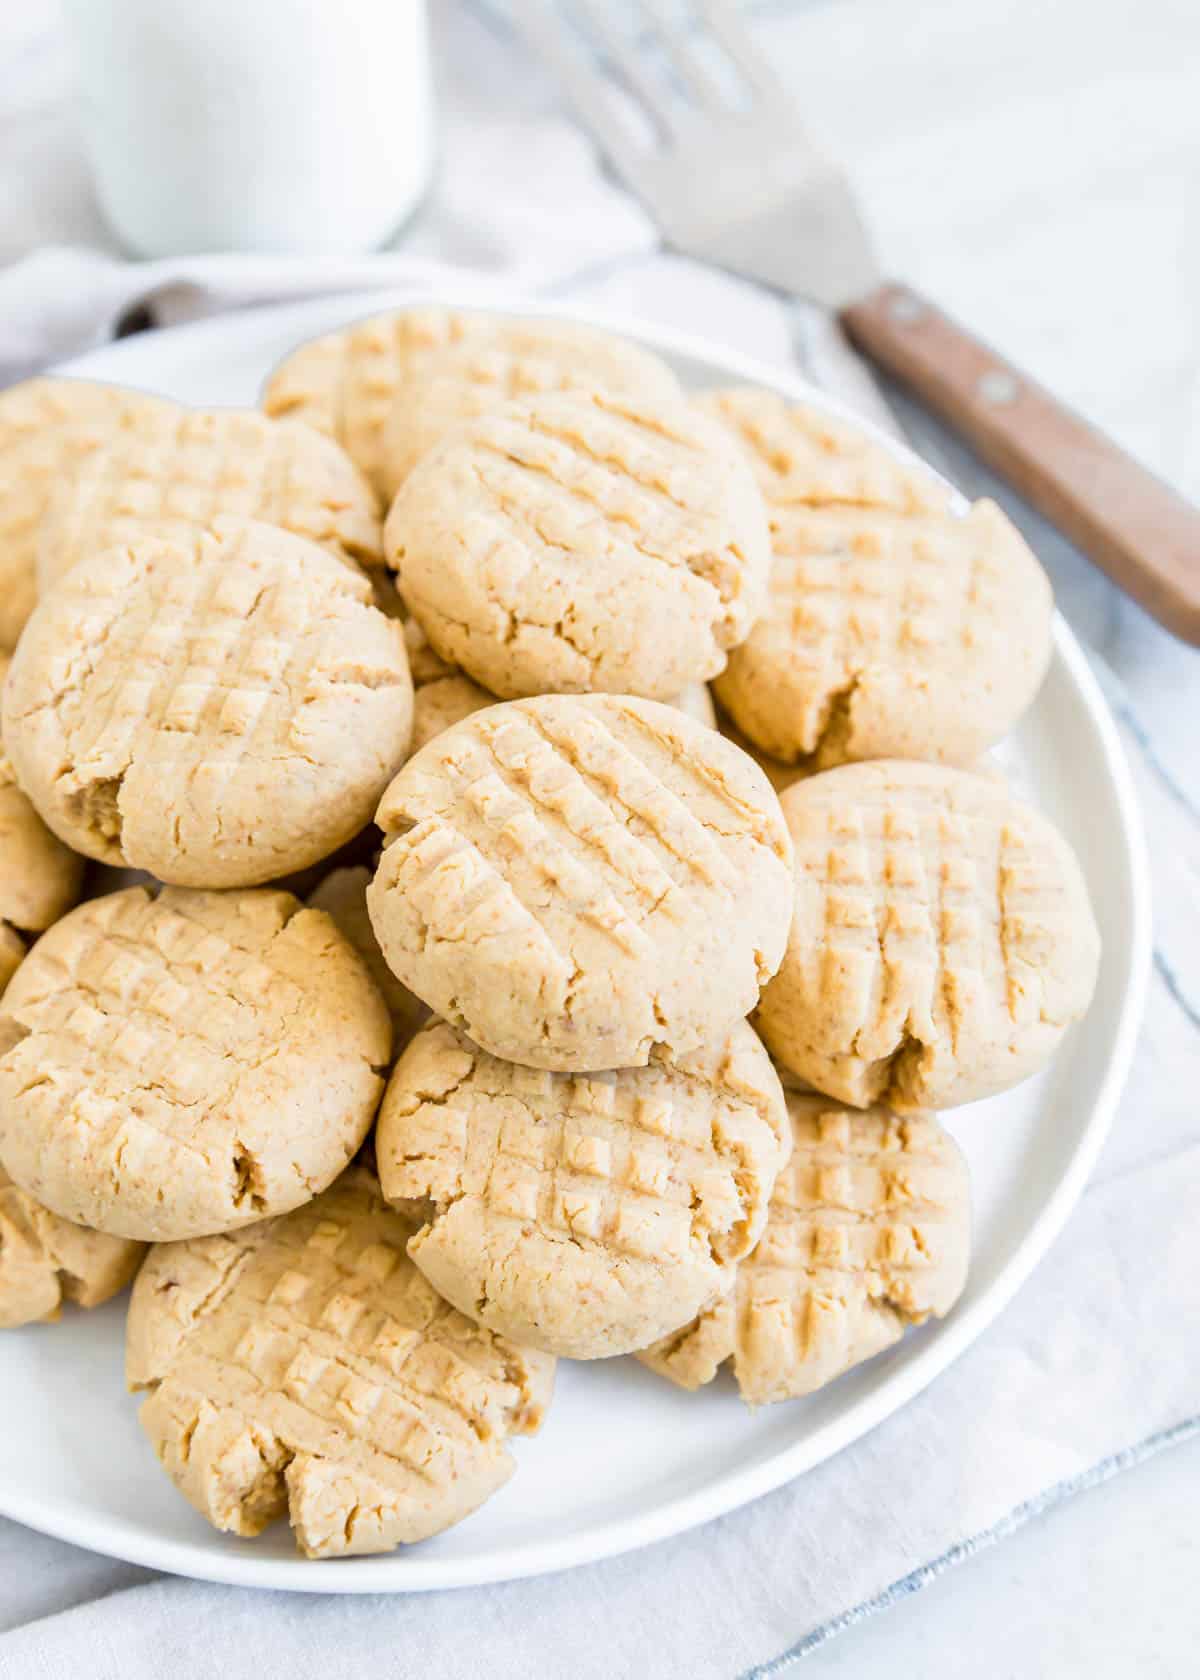 Criss cross gluten-free peanut butter cookies piled on a plate.